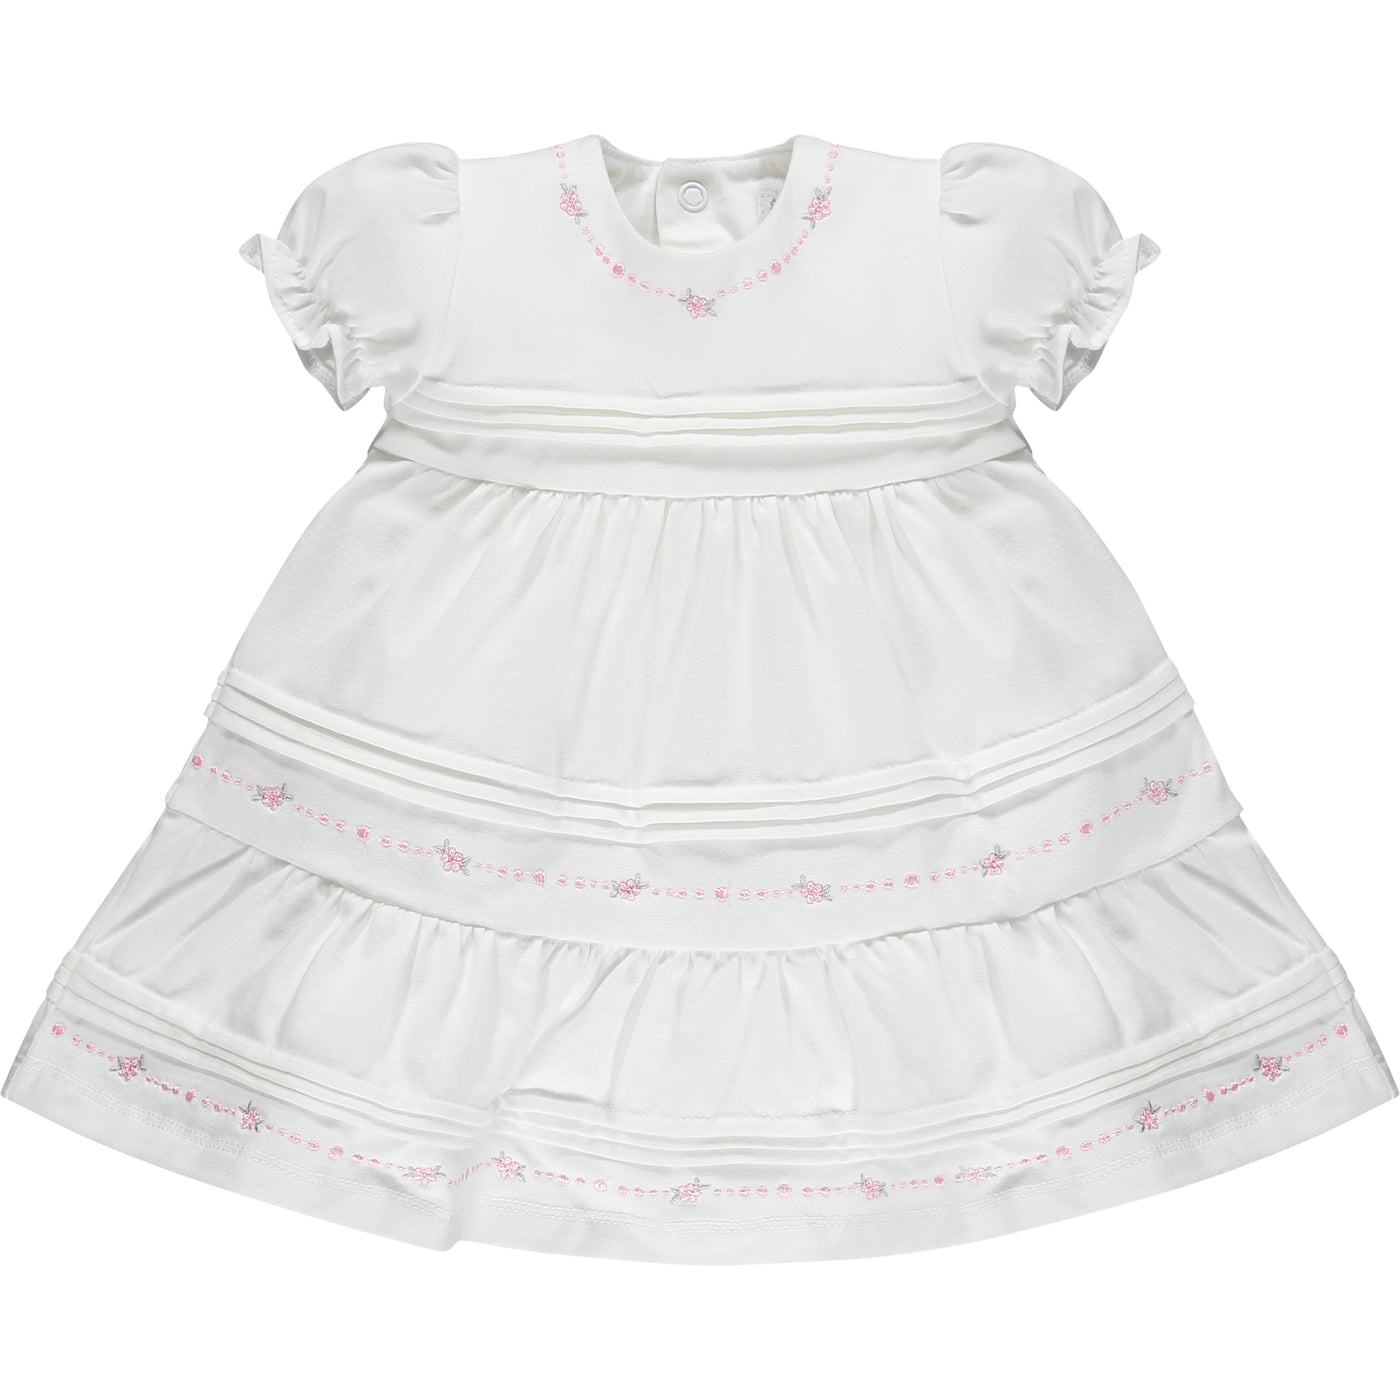 Debbie Wunderschönes weißes Babykleid